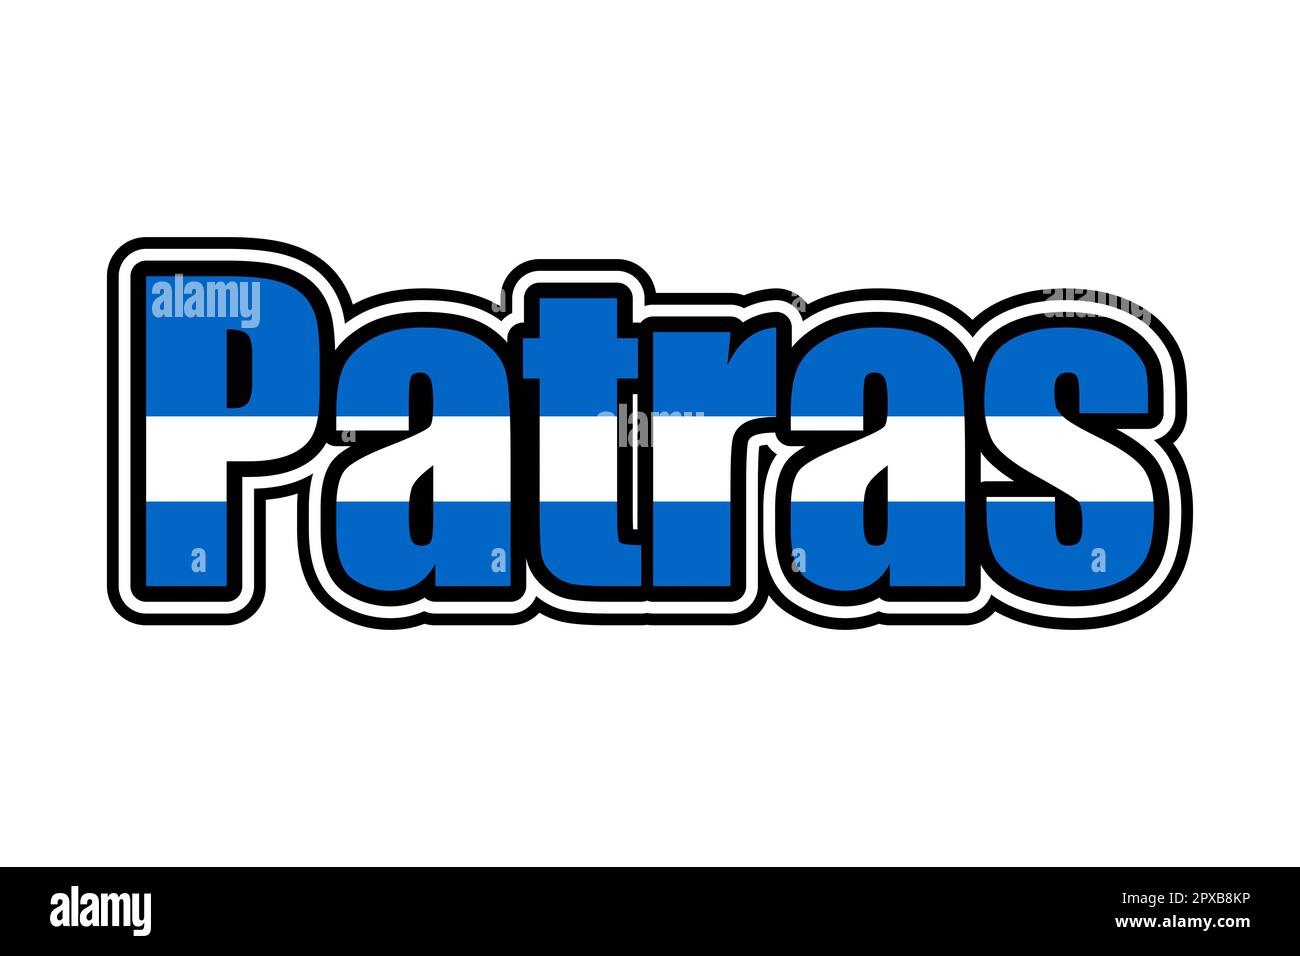 Icône de signe Patras avec couleurs de drapeau grec Banque D'Images